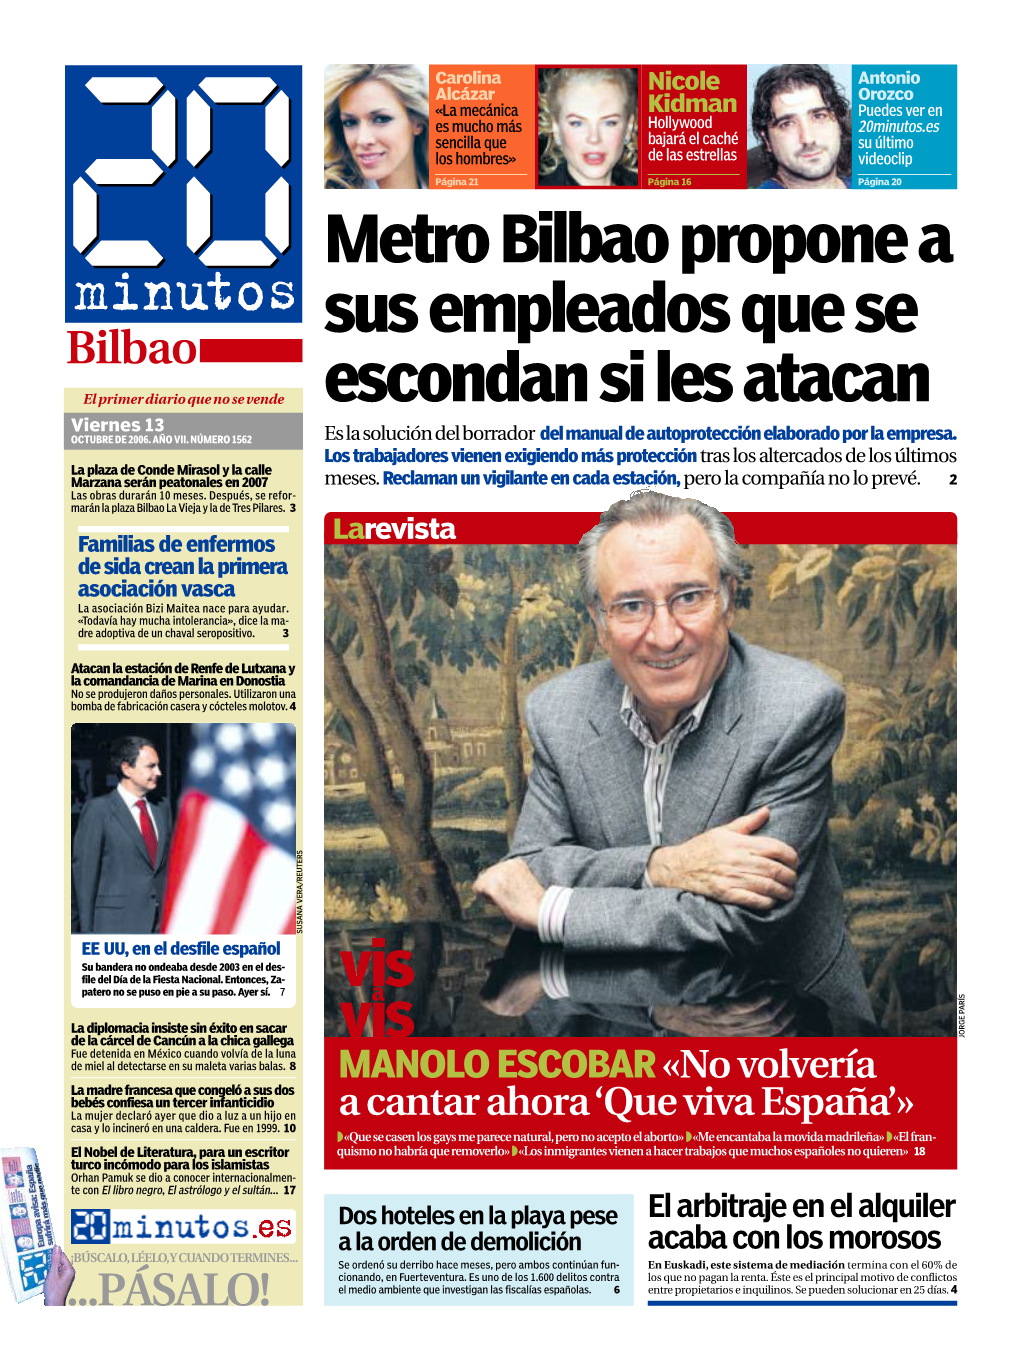 Metro Bilbao Propone a Sus Empleados Que Se Escondan Si Les Atacan